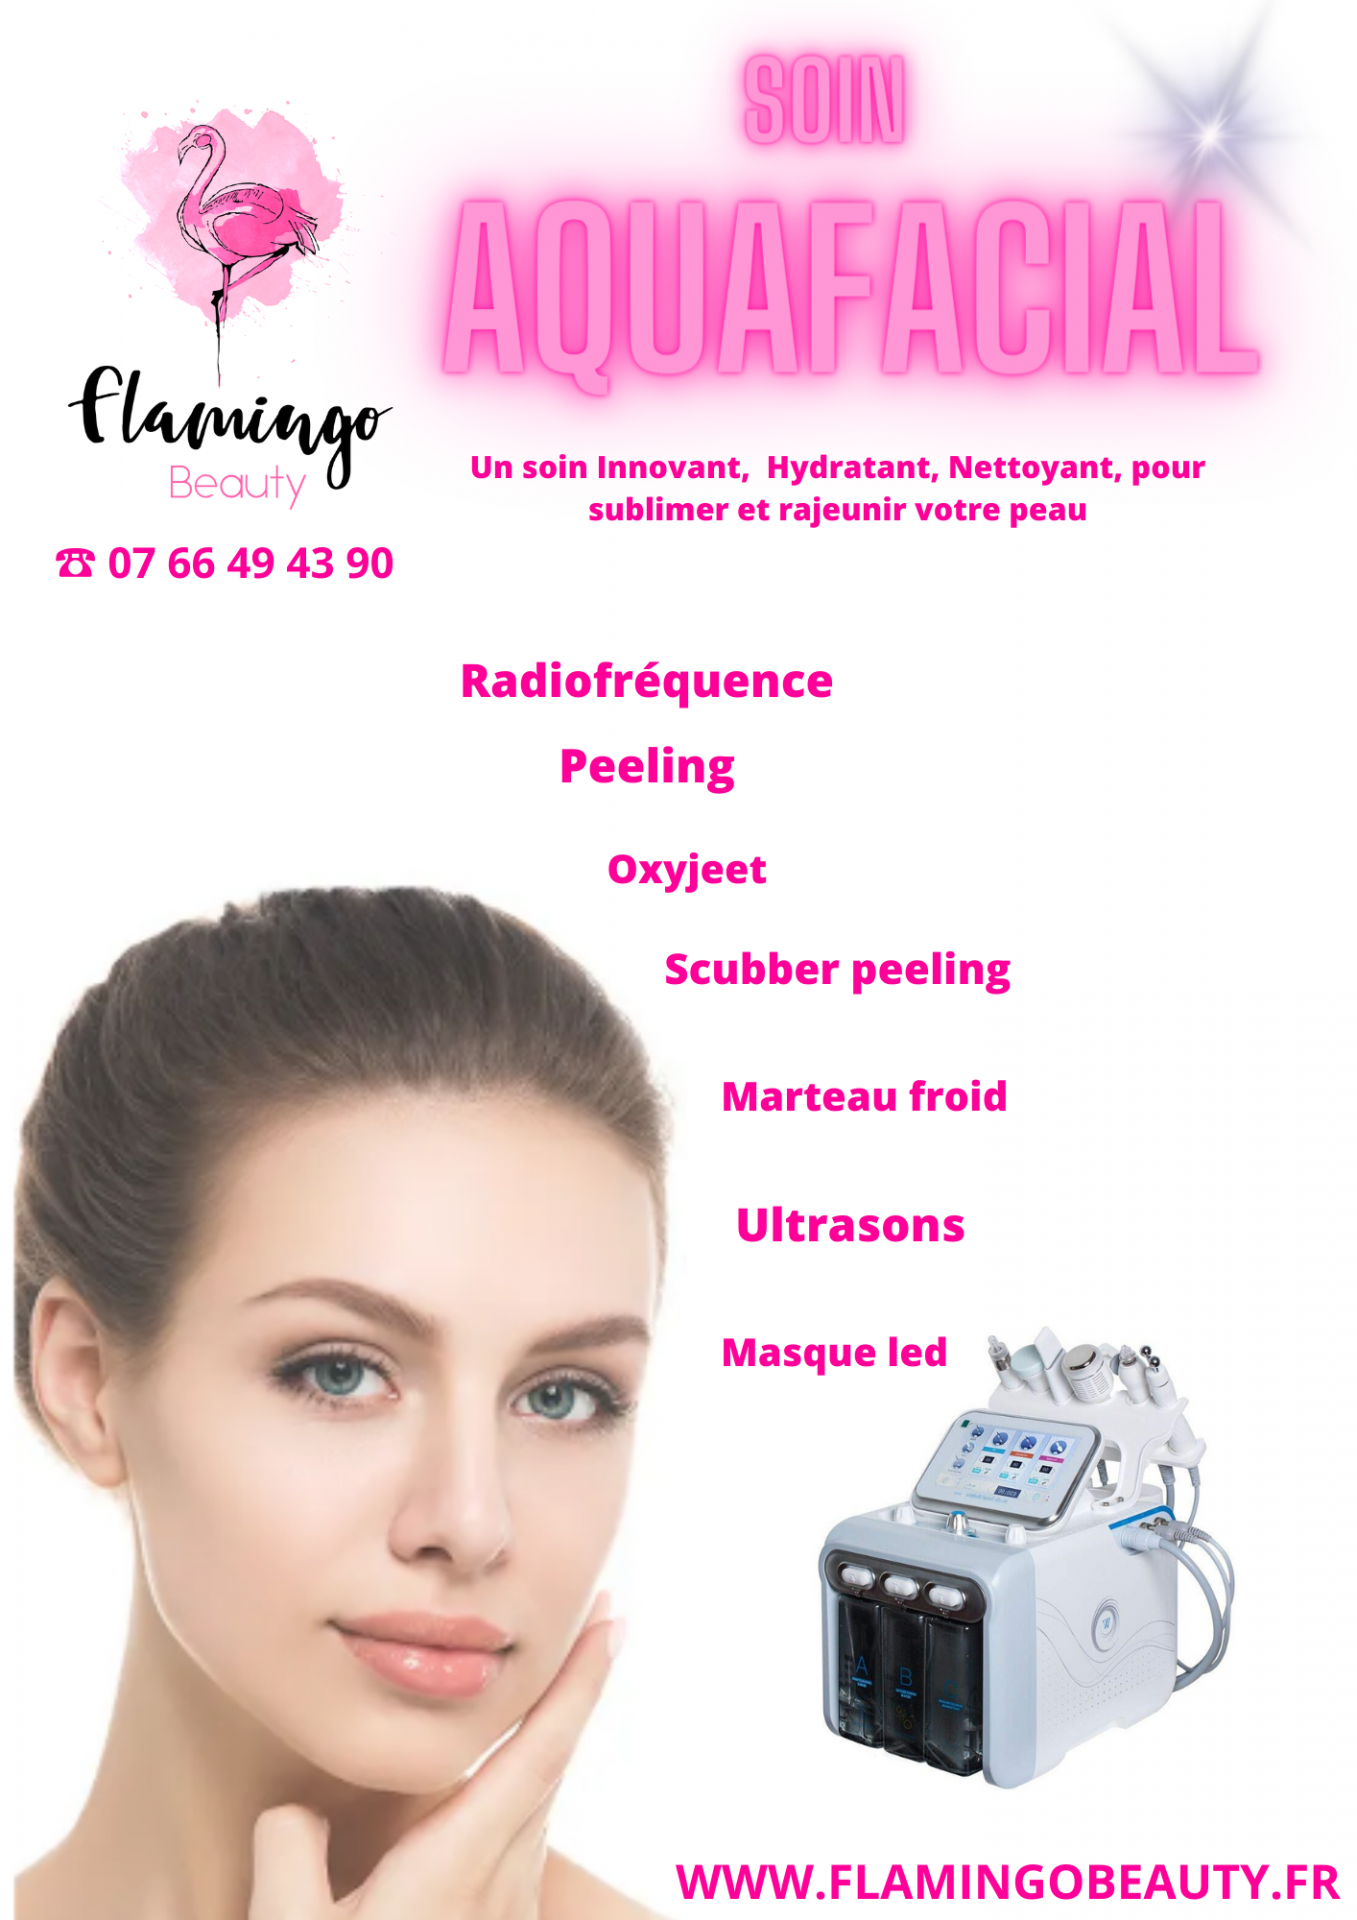 Aquafacial soin visage hydrafacial Nice